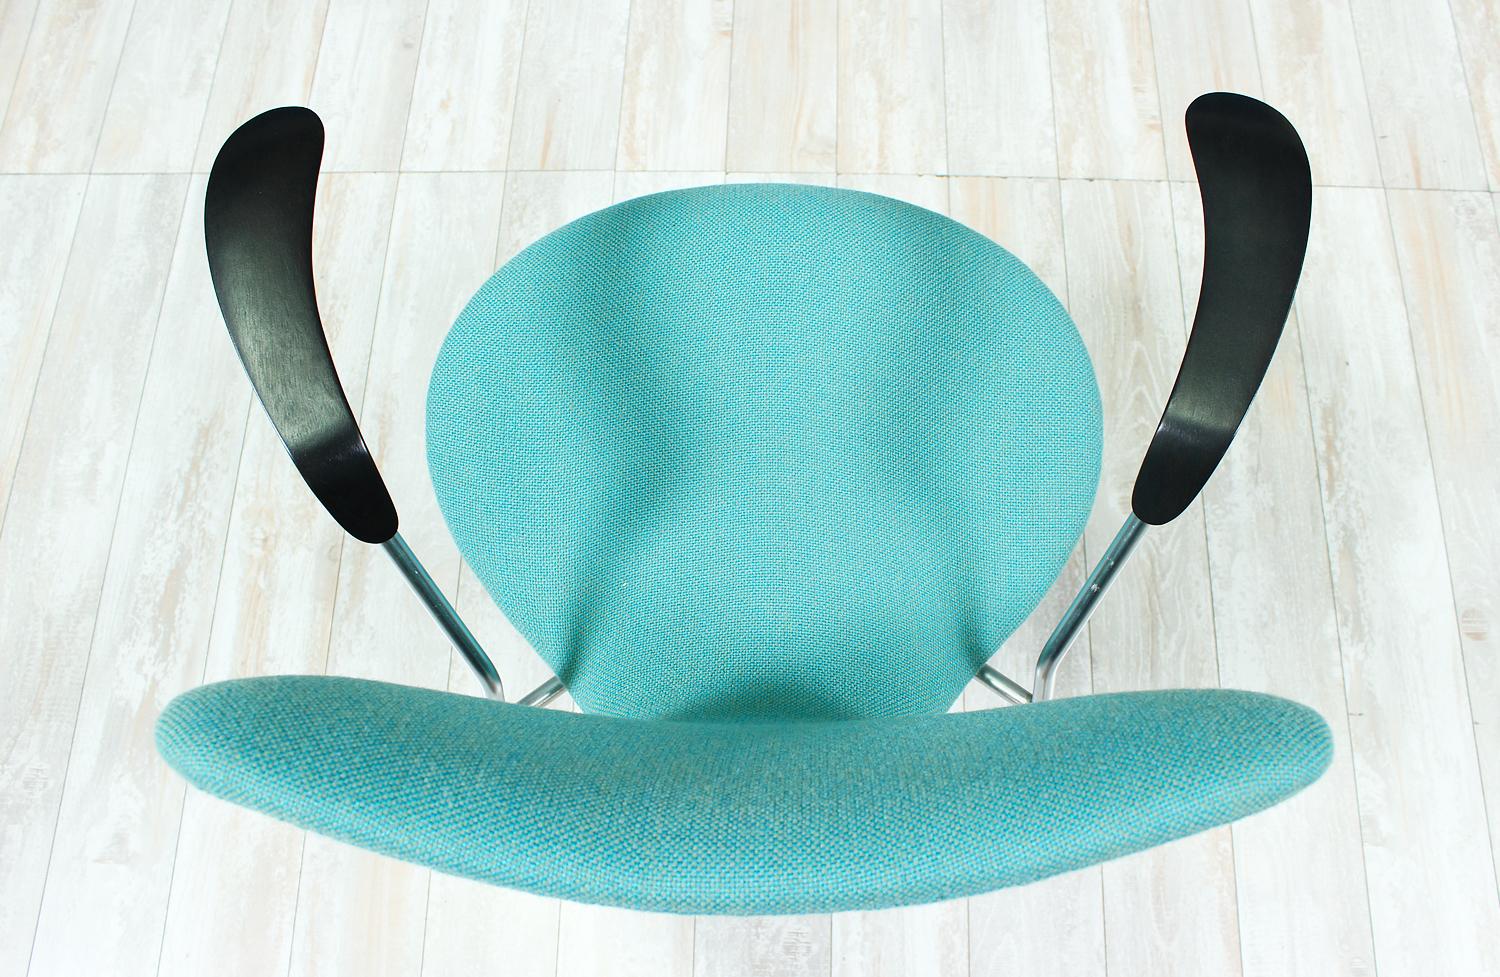 Mid-20th Century Arne Jacobsen Series-7 Desk Chair for Fritz Hansen